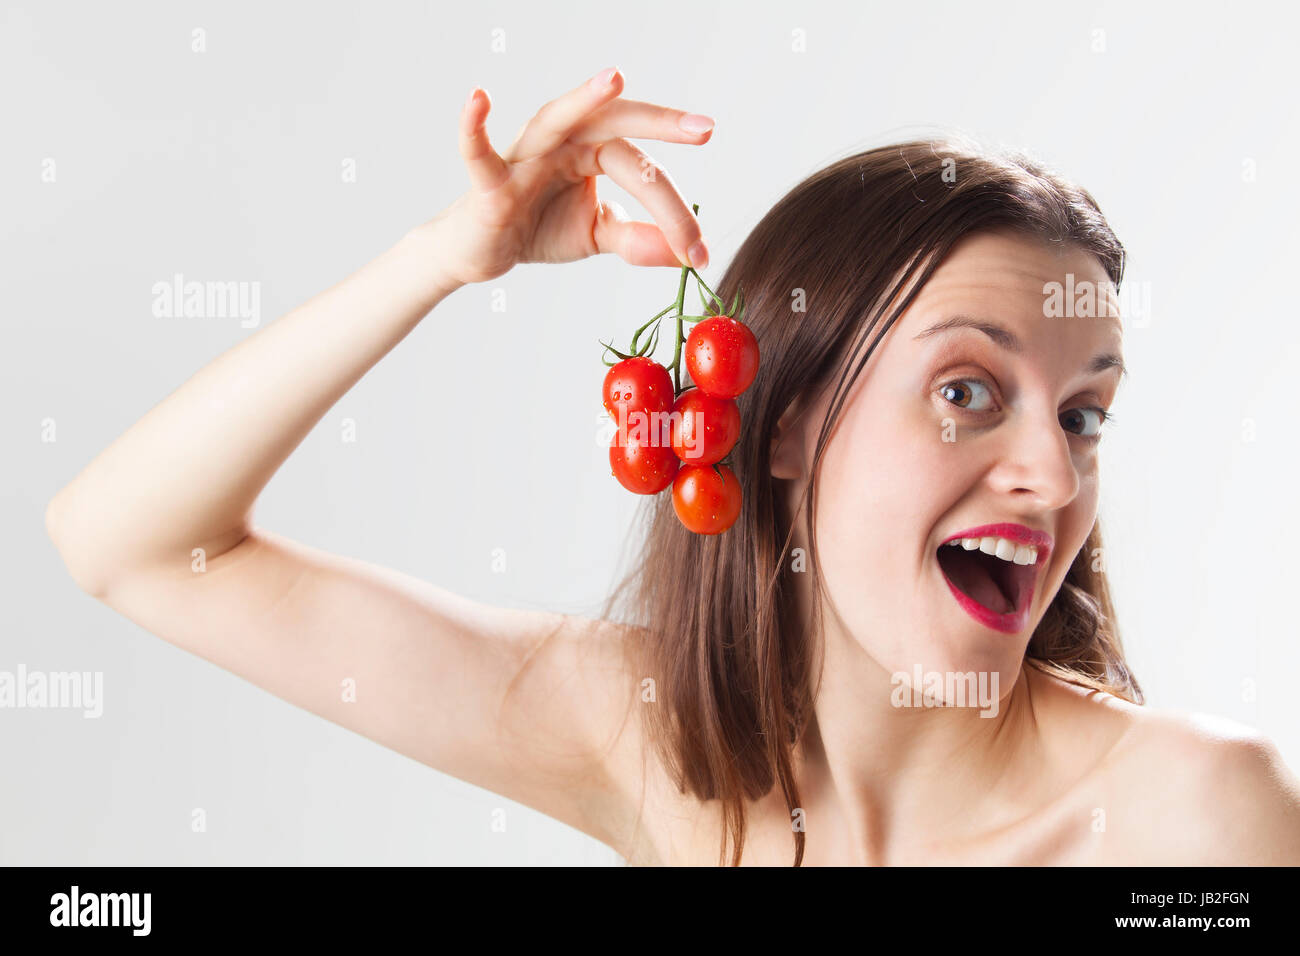 Junge Frau mit Tomaten Foto Stock